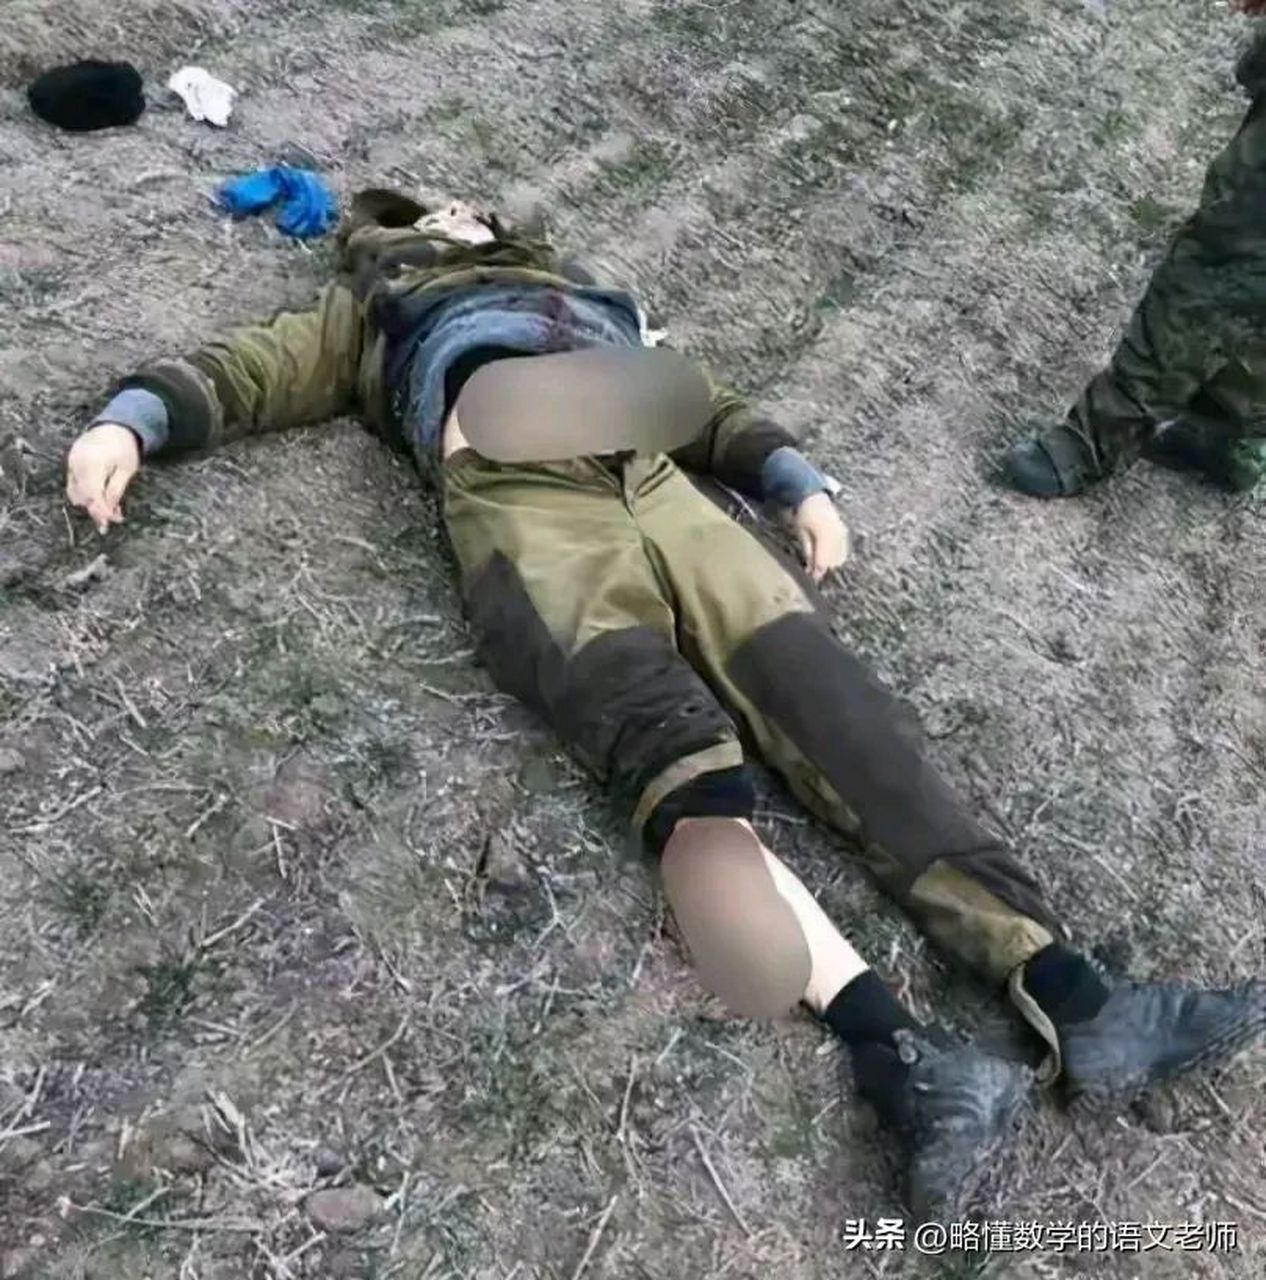 看着年轻貌美秀气的乌克兰女兵一批批地倒下,有多少人有点怜香惜玉?